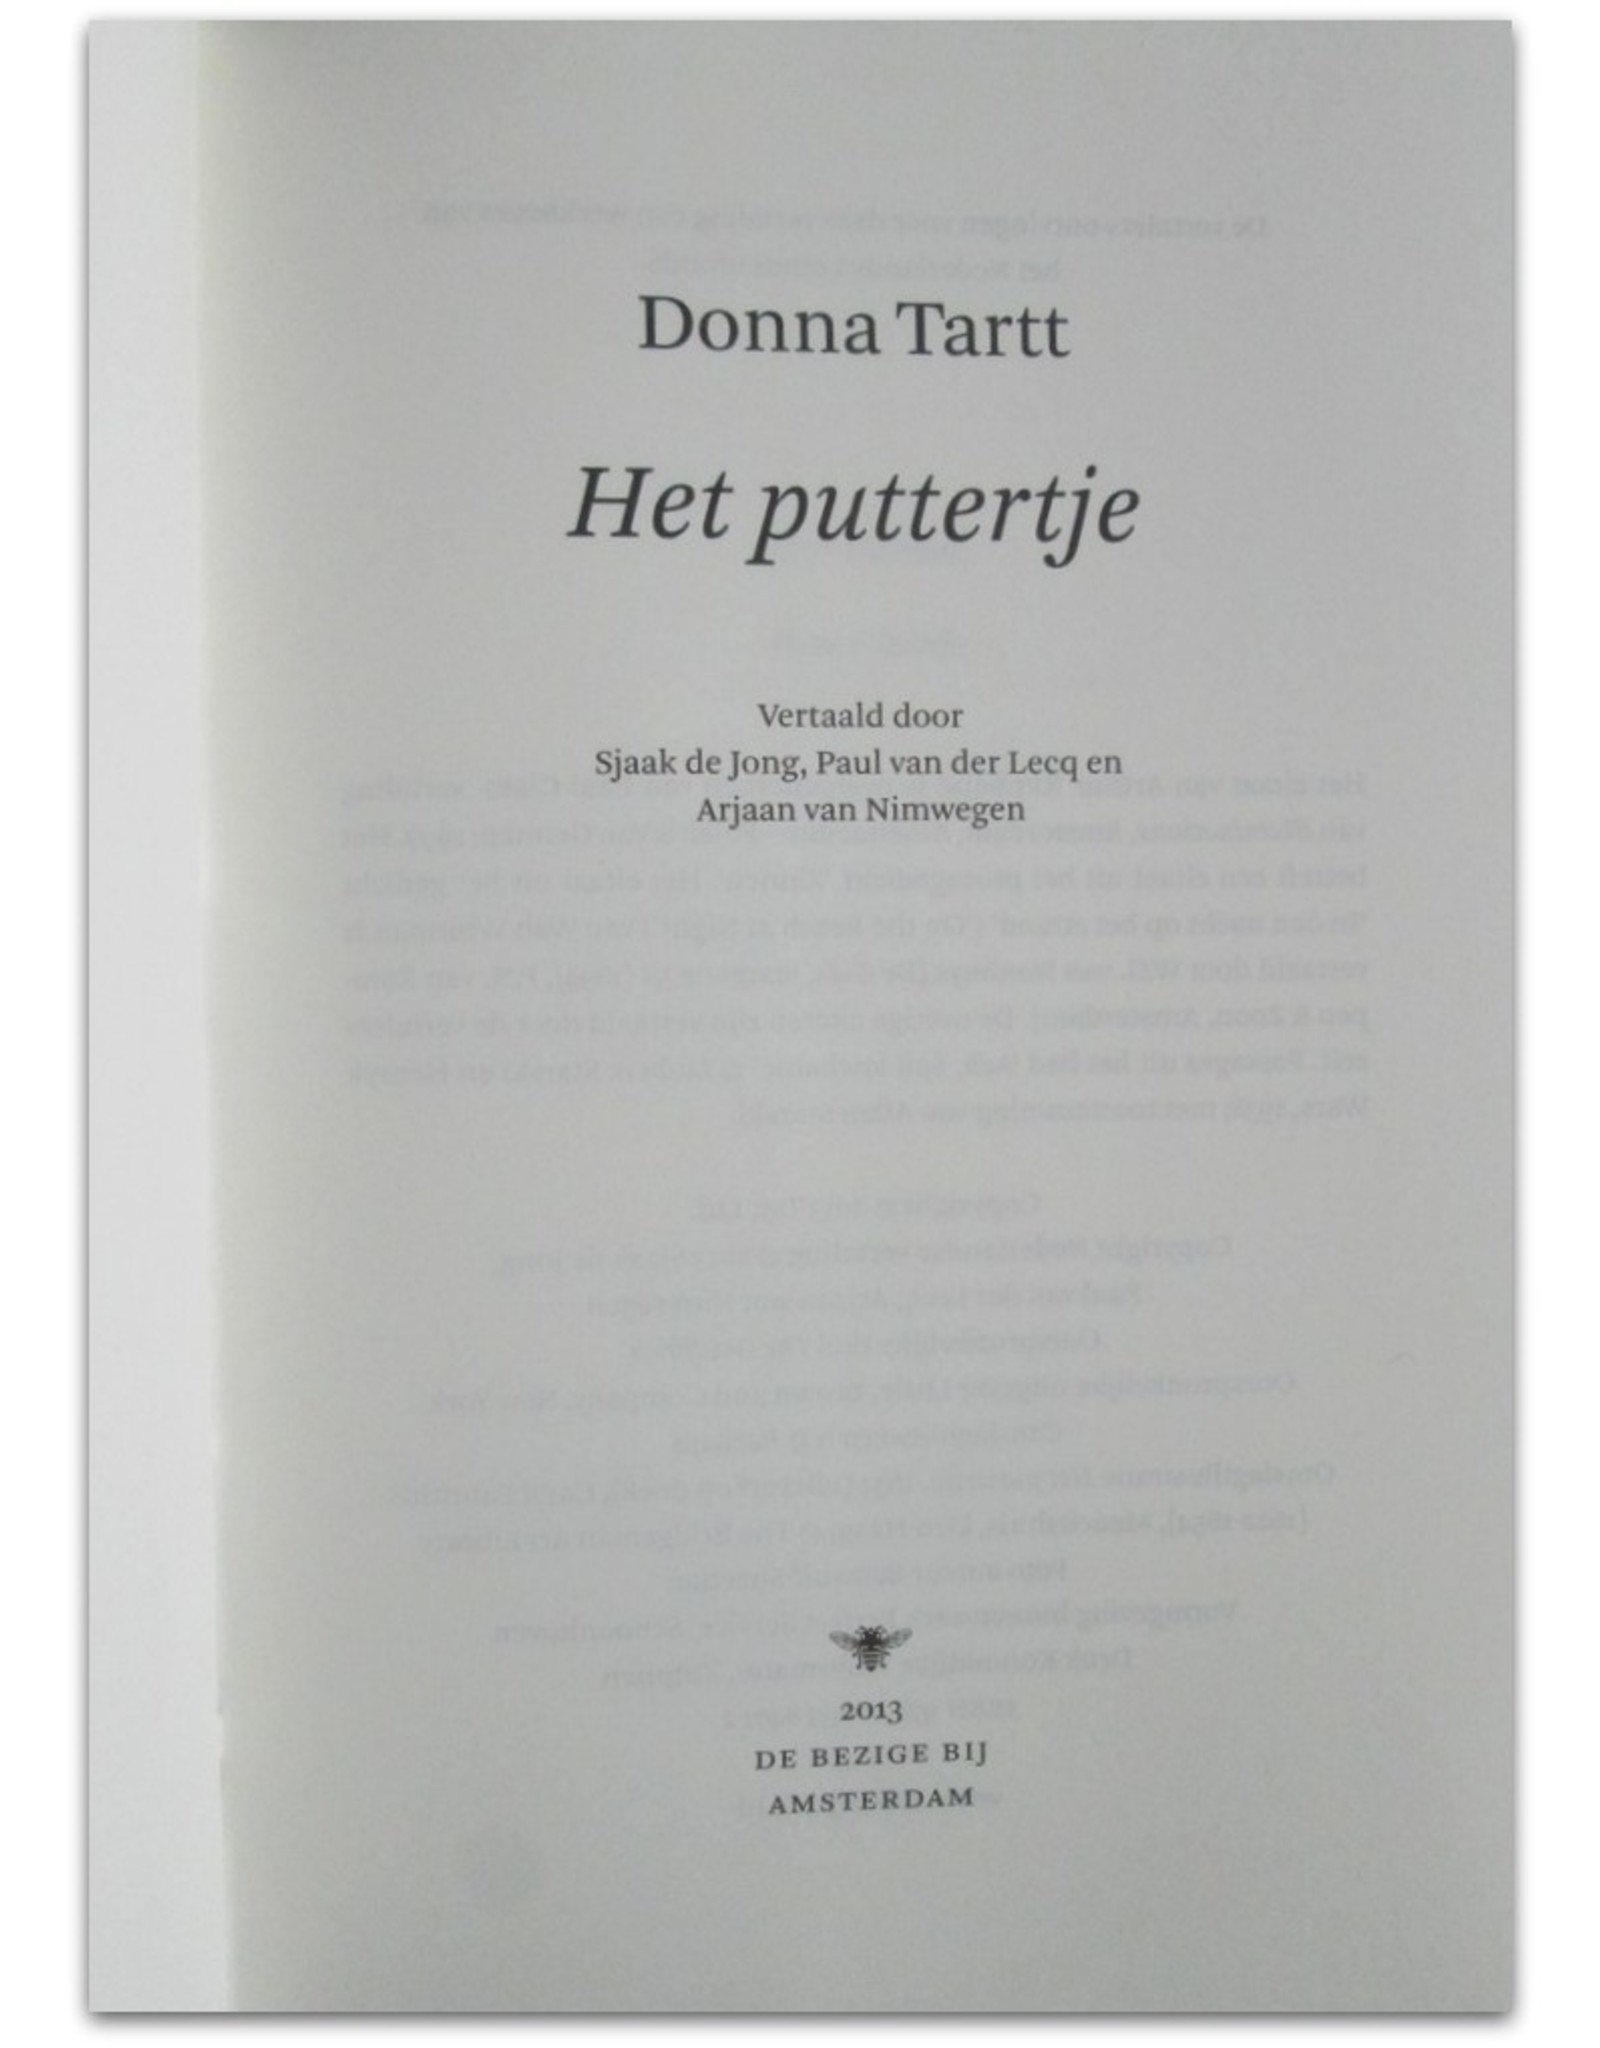 Donna Tartt - Het puttertje. Vertaald door Sjaak de Jong, Paul van der Lecq en Arjaan van Nimwegen